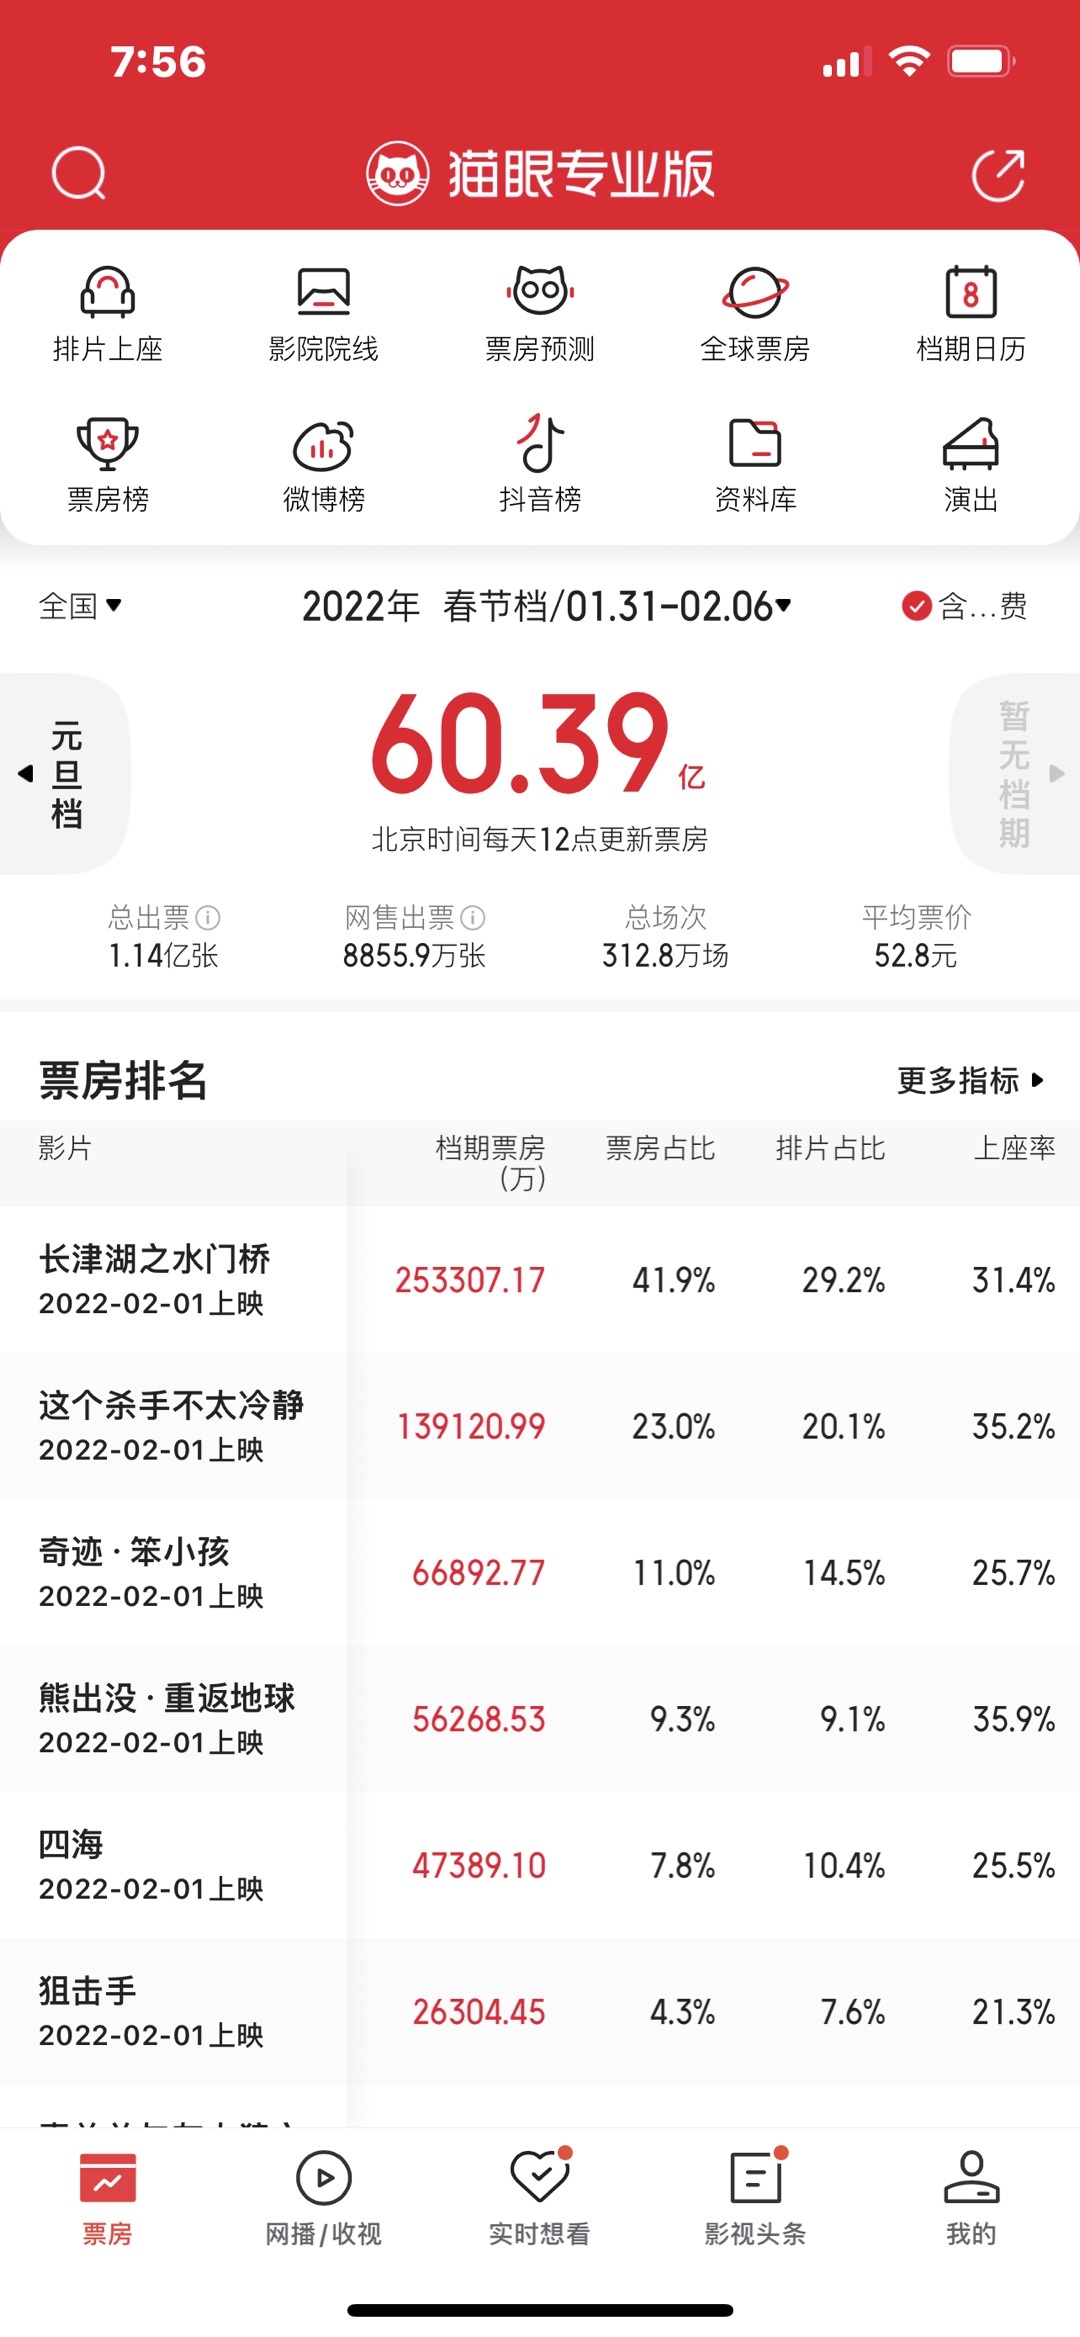 春节档总票房60.39亿元 位列中国影史春节档总票房第二